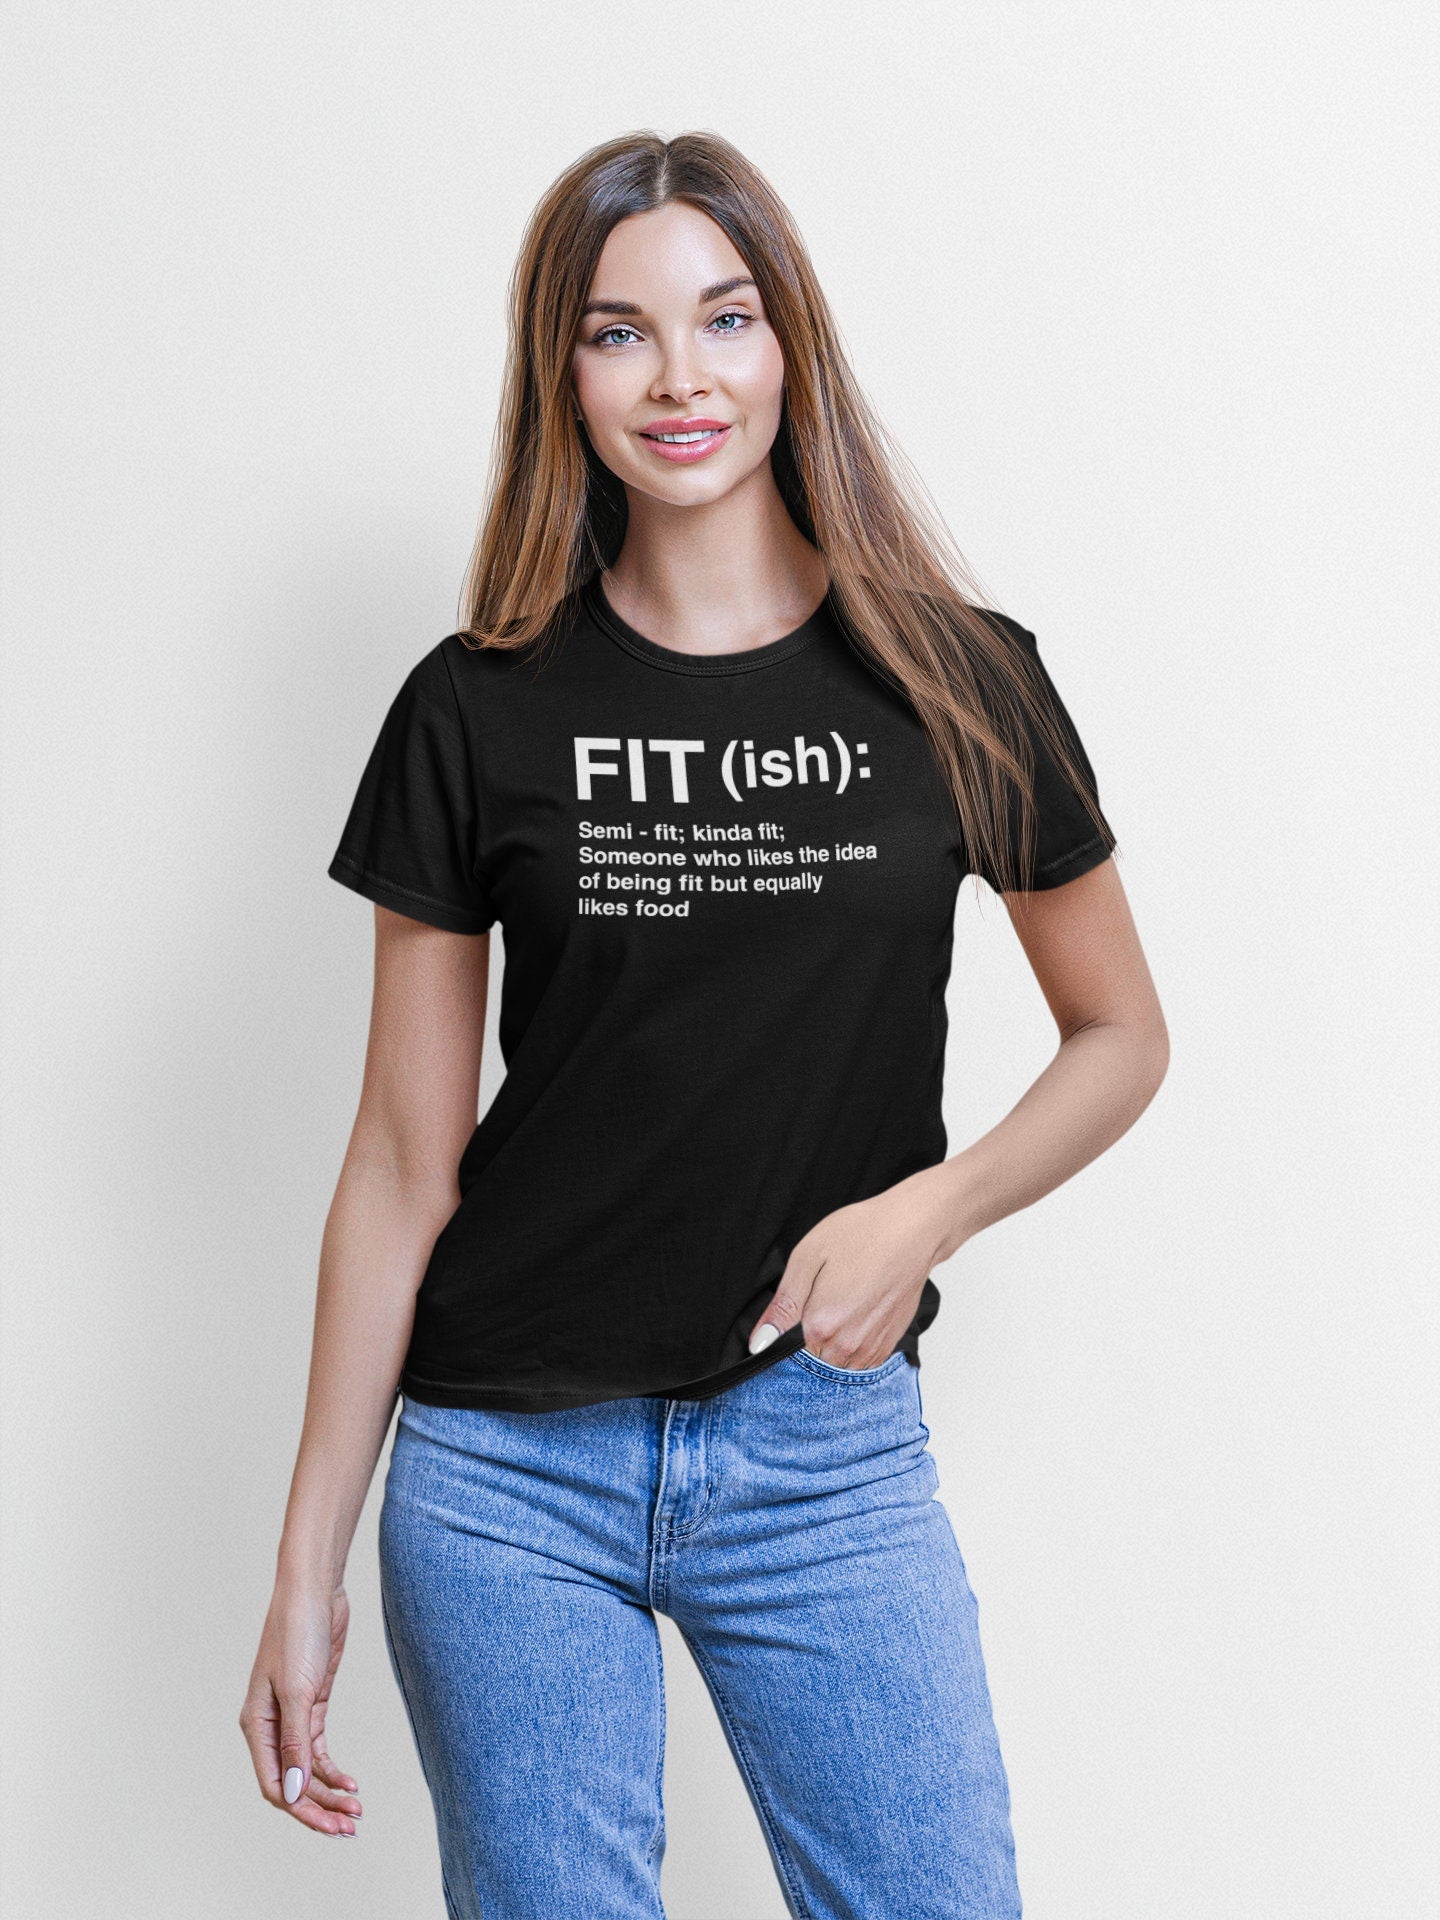 Fitish Workout T-Shirt - Funny Workout Shirts - Fitness Shirt